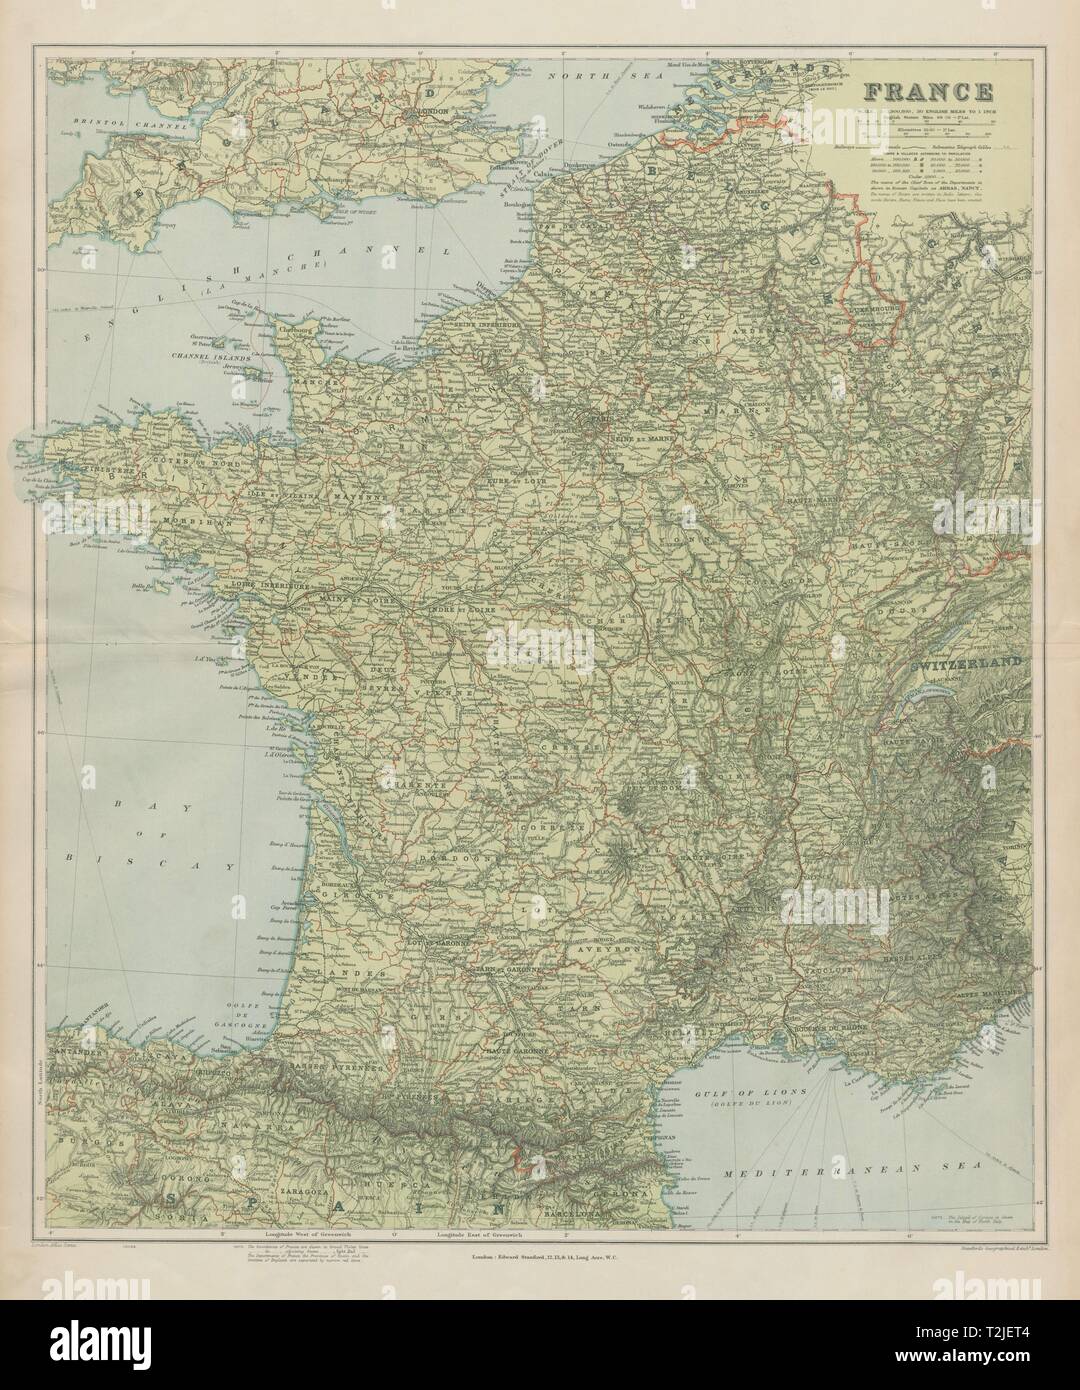 Frankreich Physisch Berge Und Flusse Gross 66 X 55 Cm Stanford 1904 Alte Karte Stockfotografie Alamy